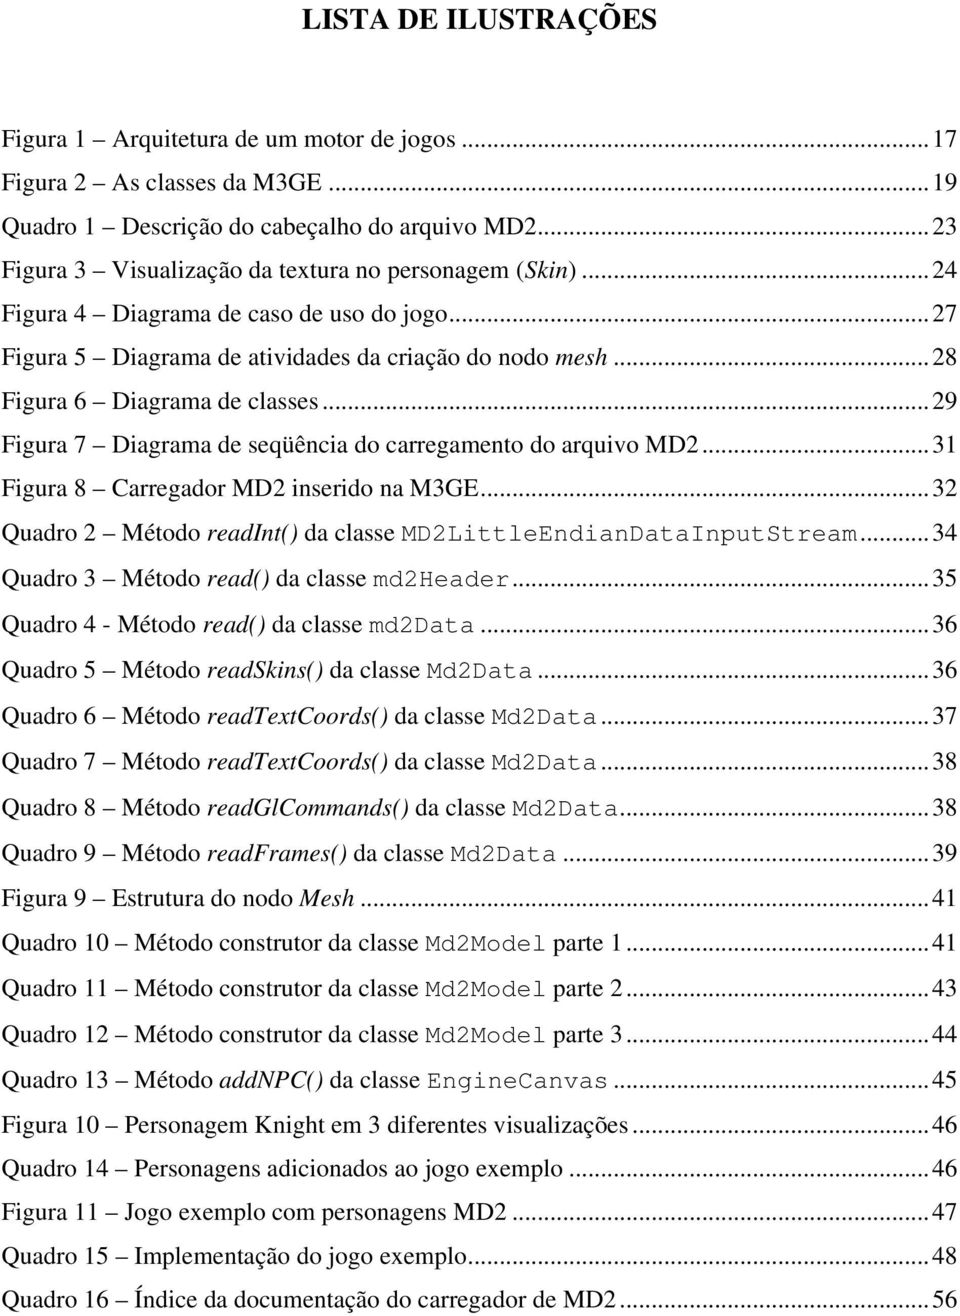 ..29 Figura 7 Diagrama de seqüência do carregamento do arquivo MD2...31 Figura 8 Carregador MD2 inserido na M3GE...32 Quadro 2 Método readint() da classe MD2LittleEndianDataInputStream.